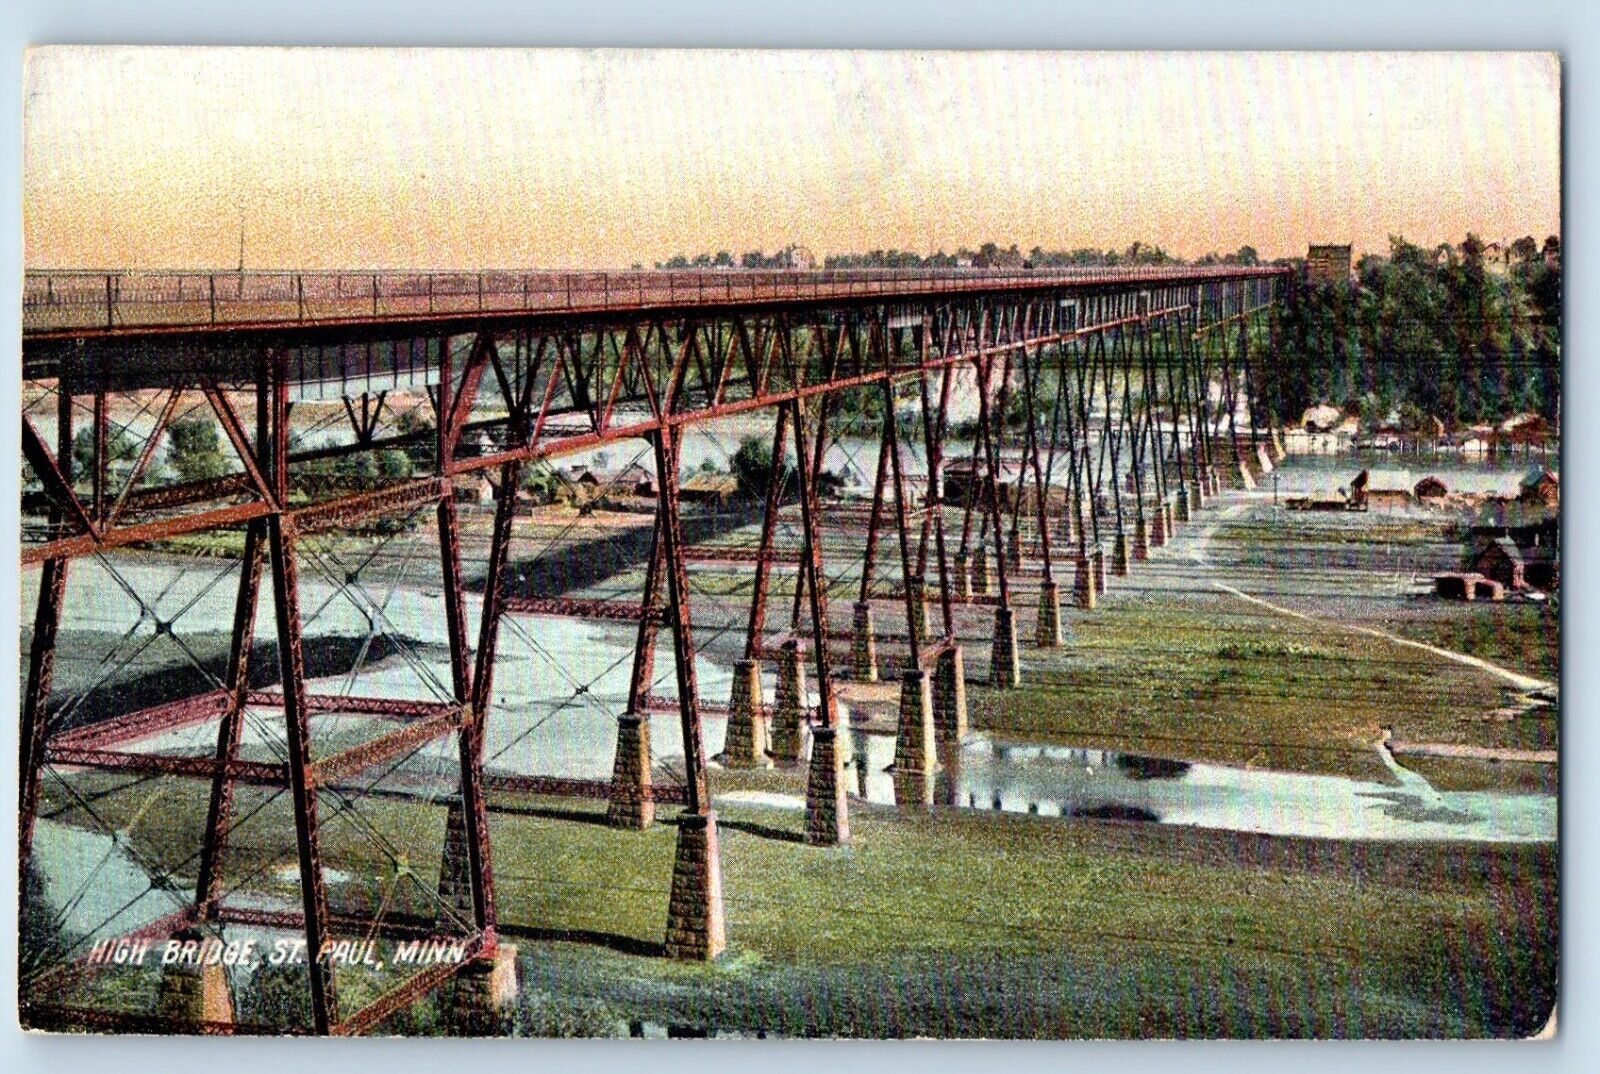 St. Paul Minnesota MN Postcard High Bridge Exterior View c1905 Vintage Antique